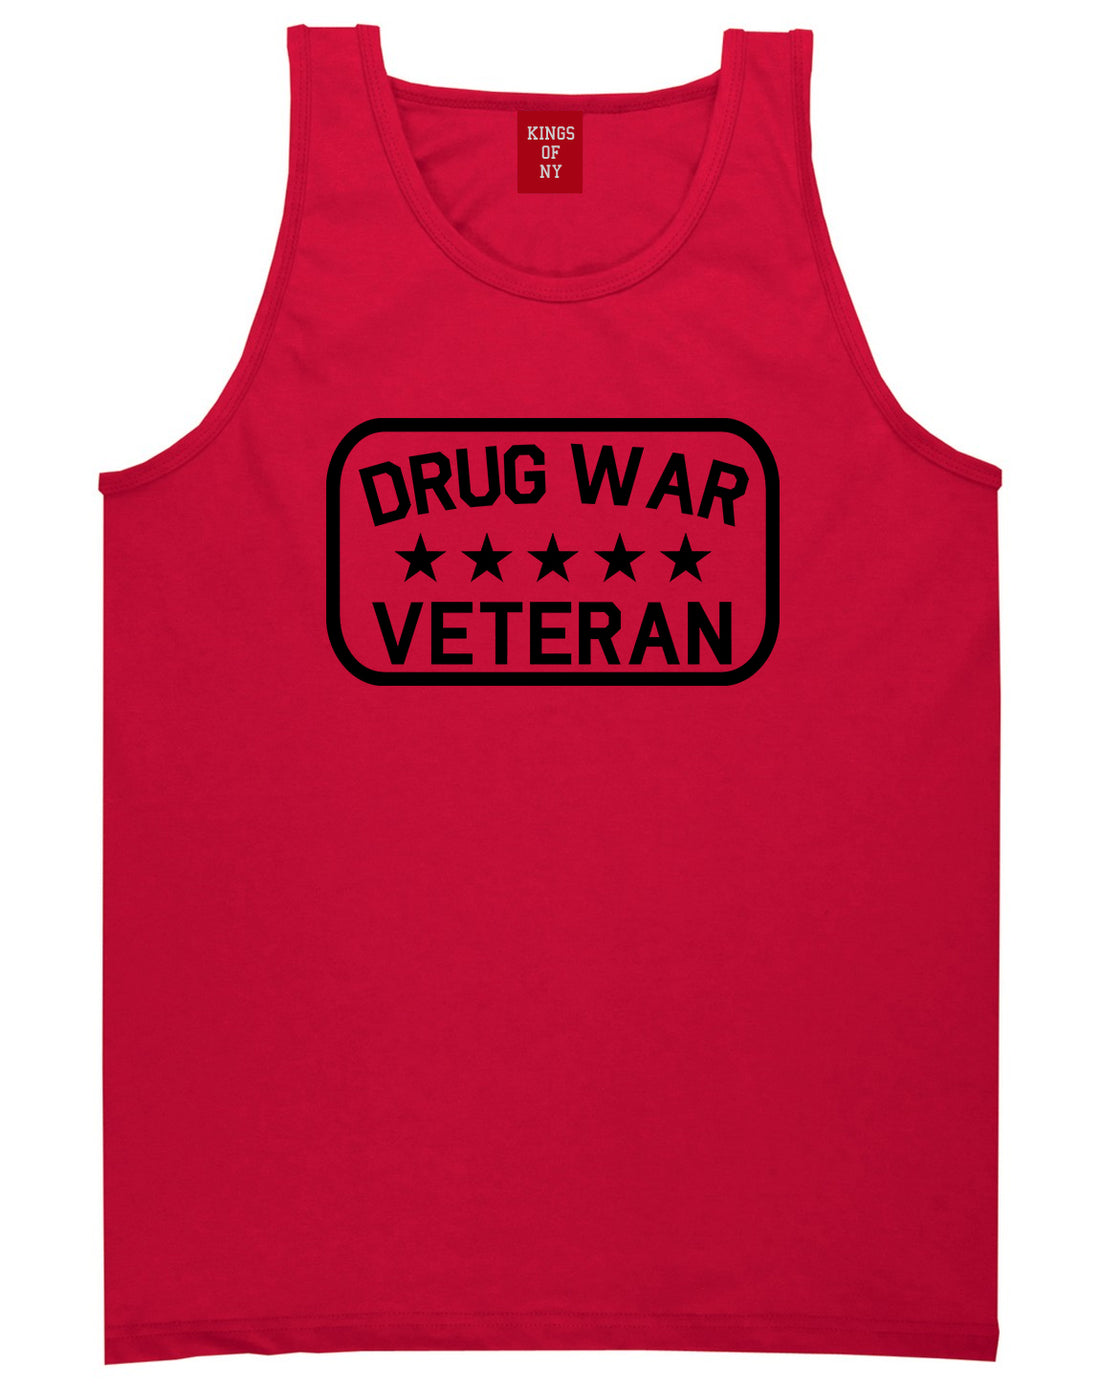 Drug_War_Veteran Mens Red Tank Top Shirt by Kings Of NY